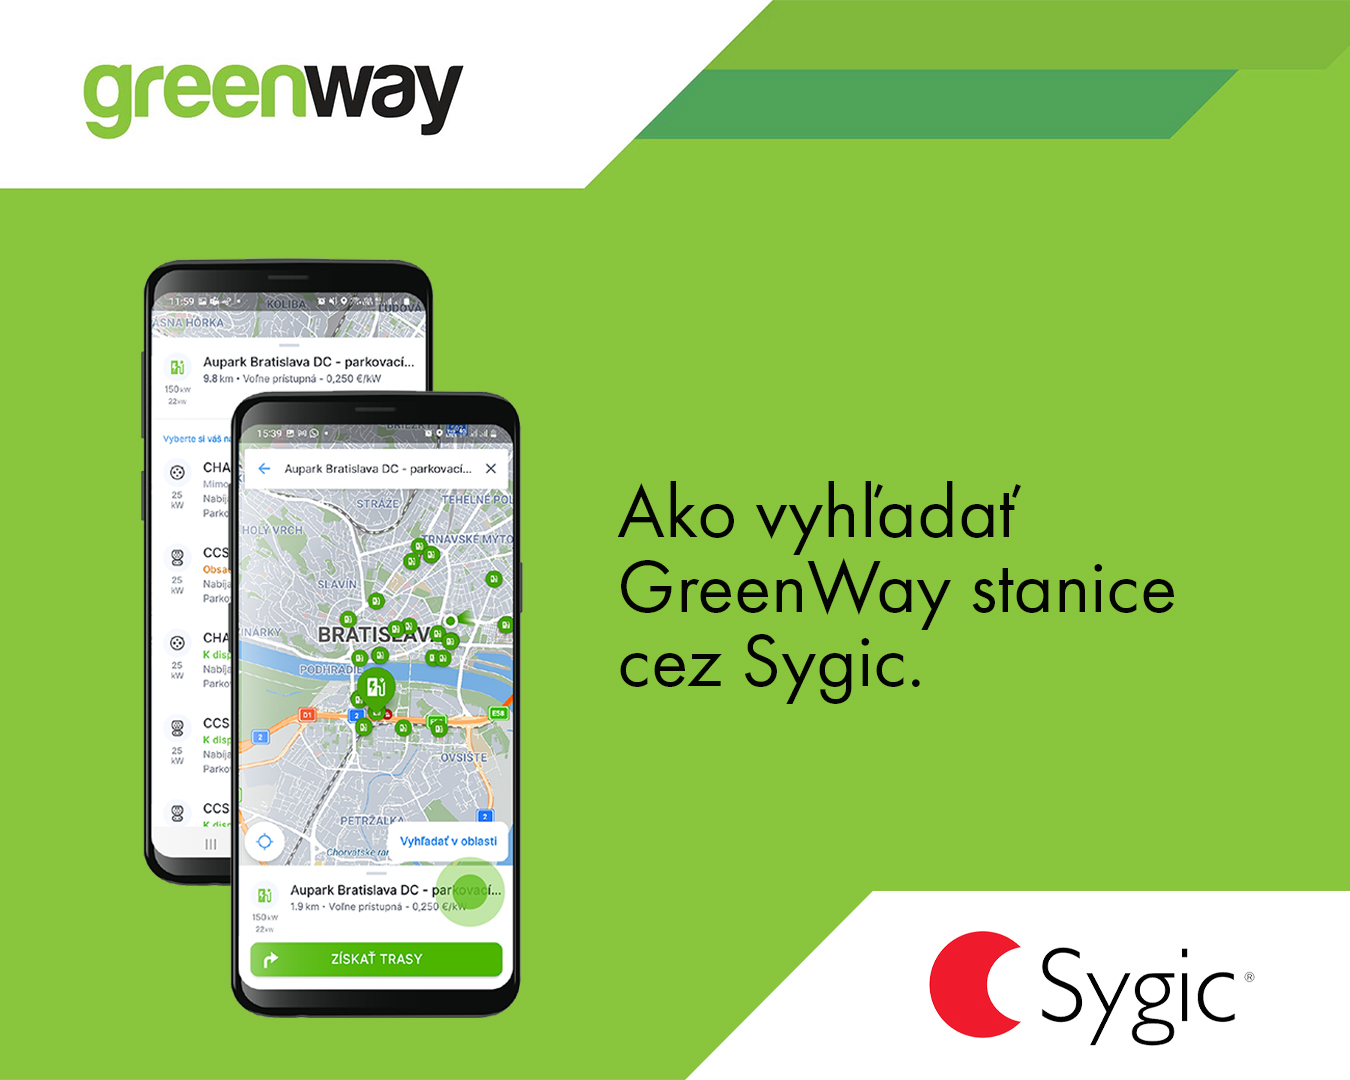 Nabíjanie elektromobilu na staniciach GreenWay  spustíte priamo z navigácie Sygic